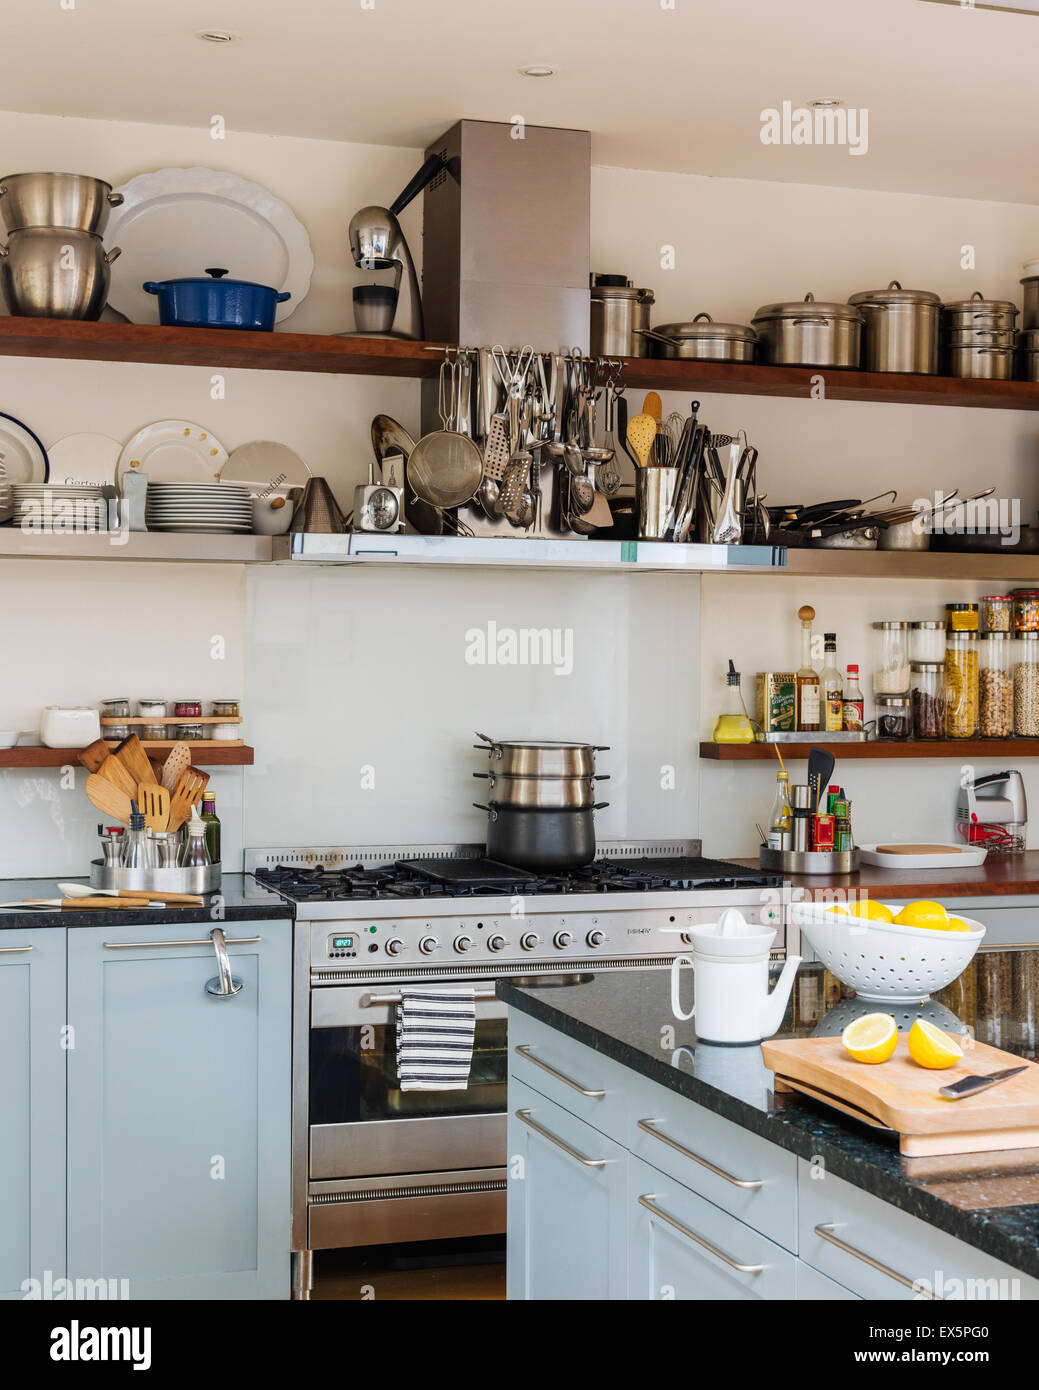 Offene Regale in hellen luftigen Küche Küchenherd mit Granit belegt Arbeitsflächen Stockfoto